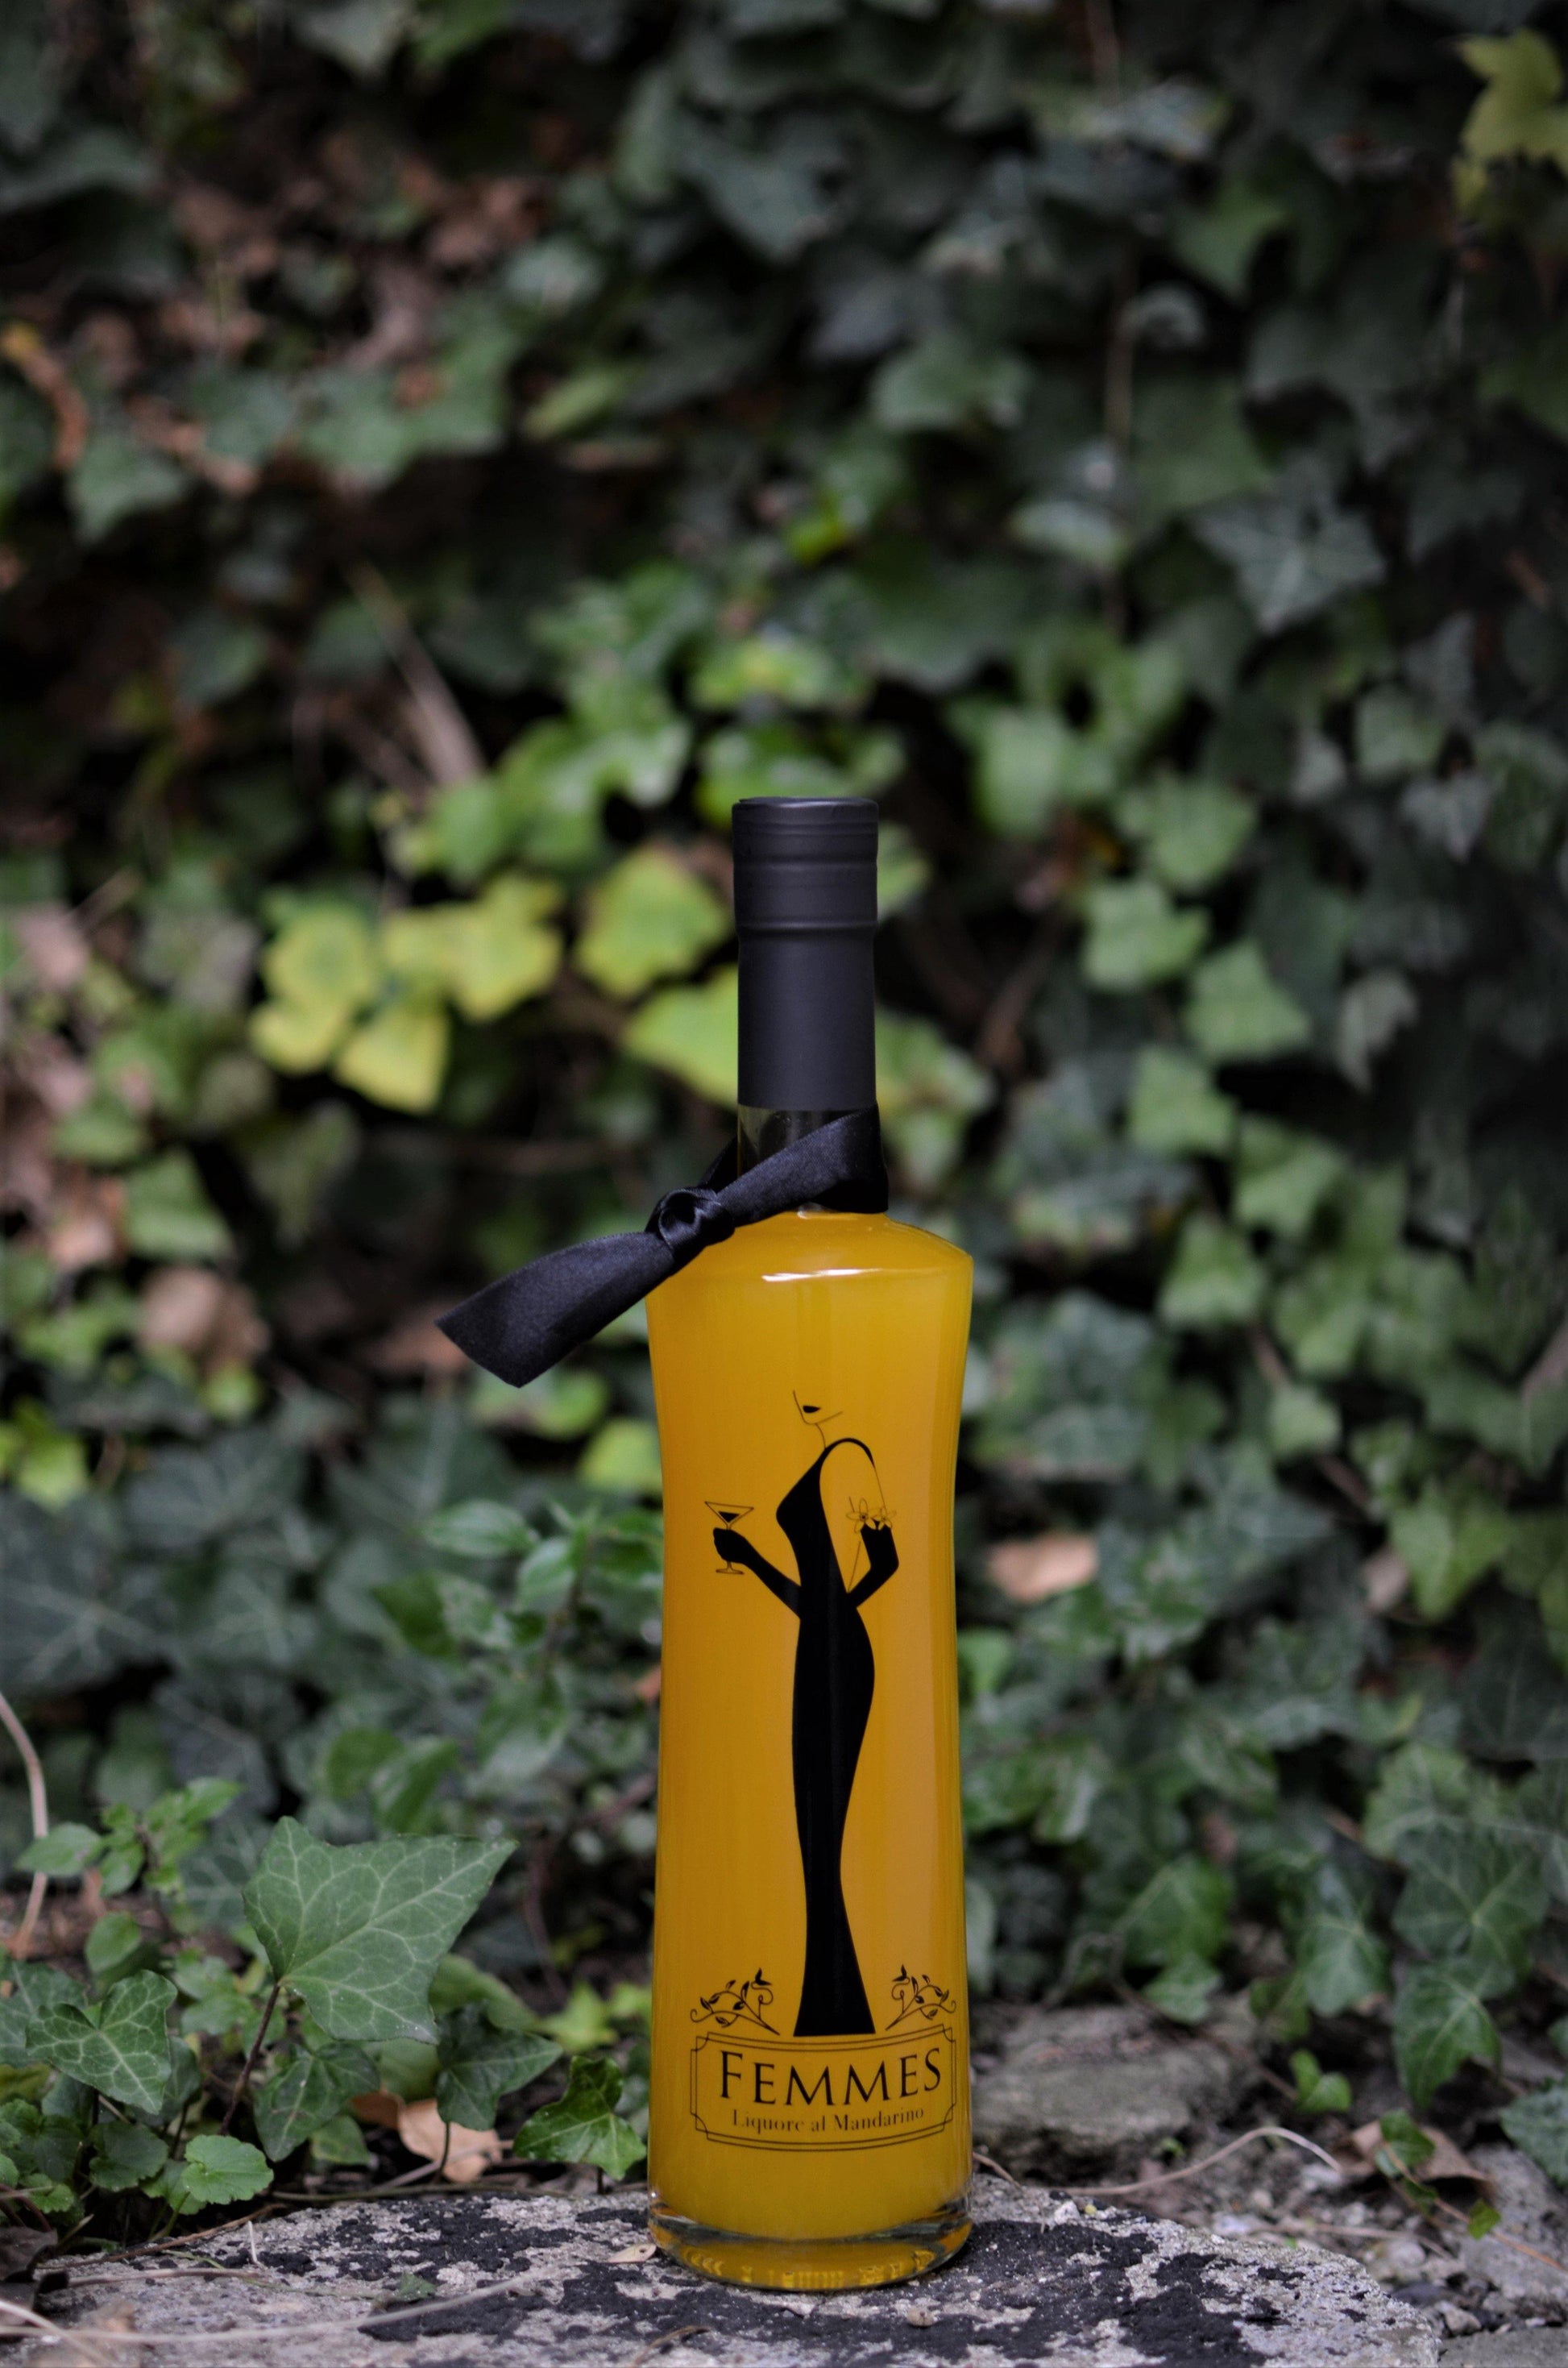 FEMMES Liquore al mandarino - 3 Bottiglie - I migliori prodotti Made in Italy da Fiera Monza e Brianza SHOP - Solo 31.50€! Acquista subito su Fiera di Monza Shop!